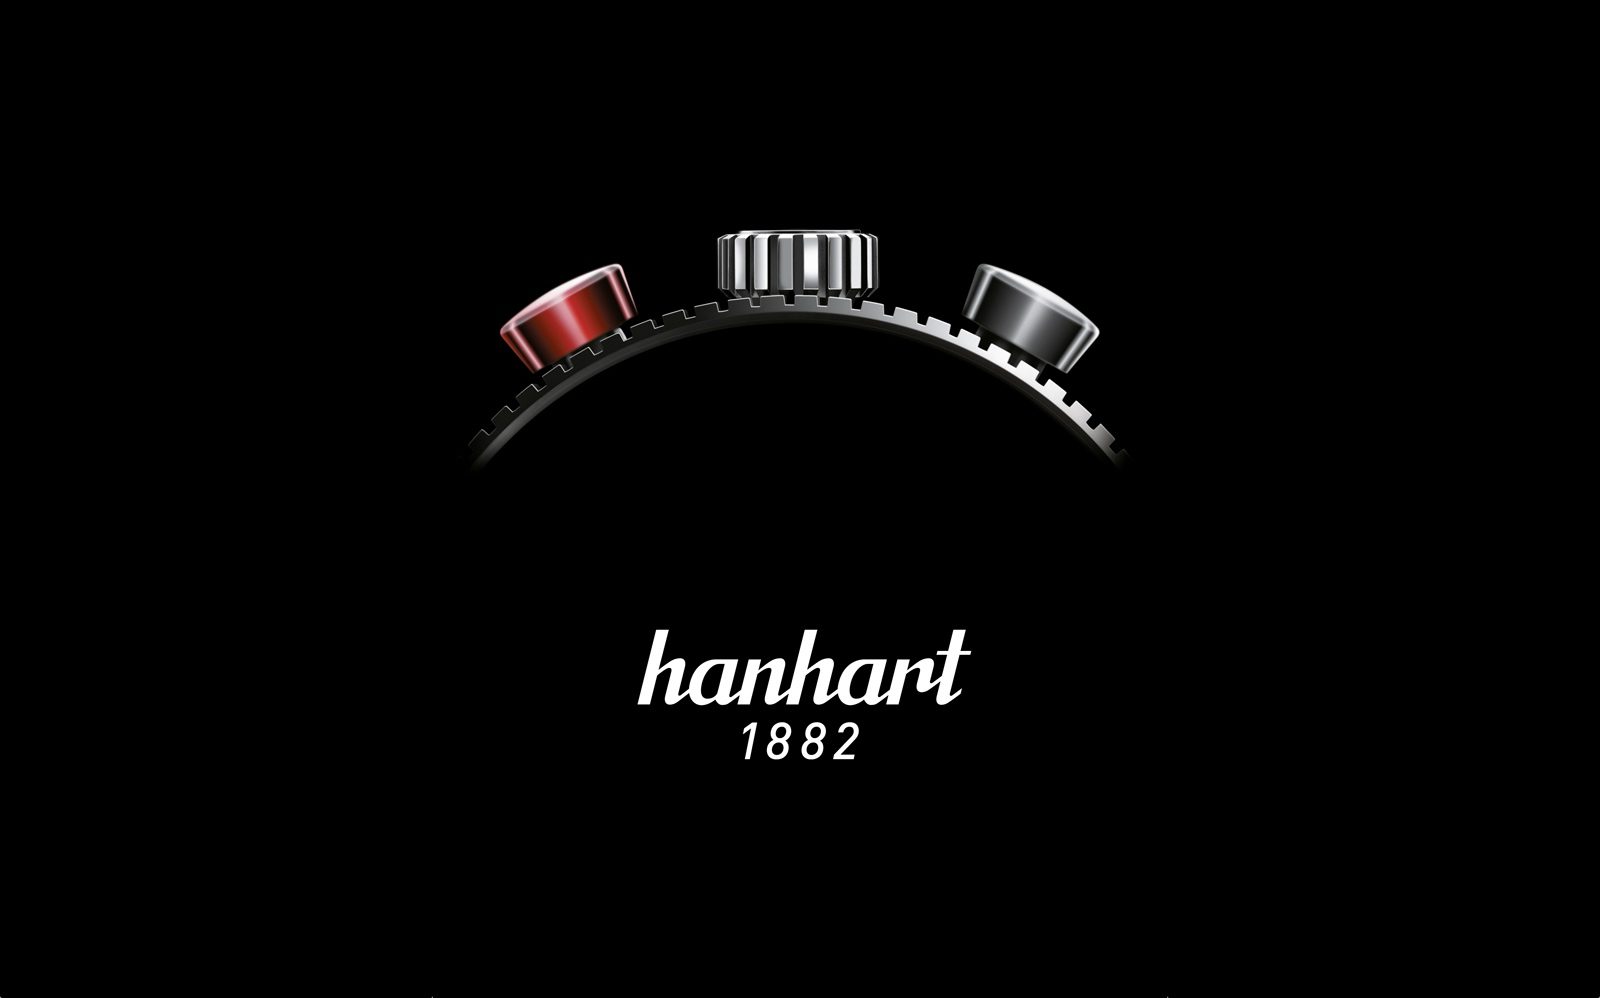 Hanhart anuncia un nuevo acero 100 veces más resistente